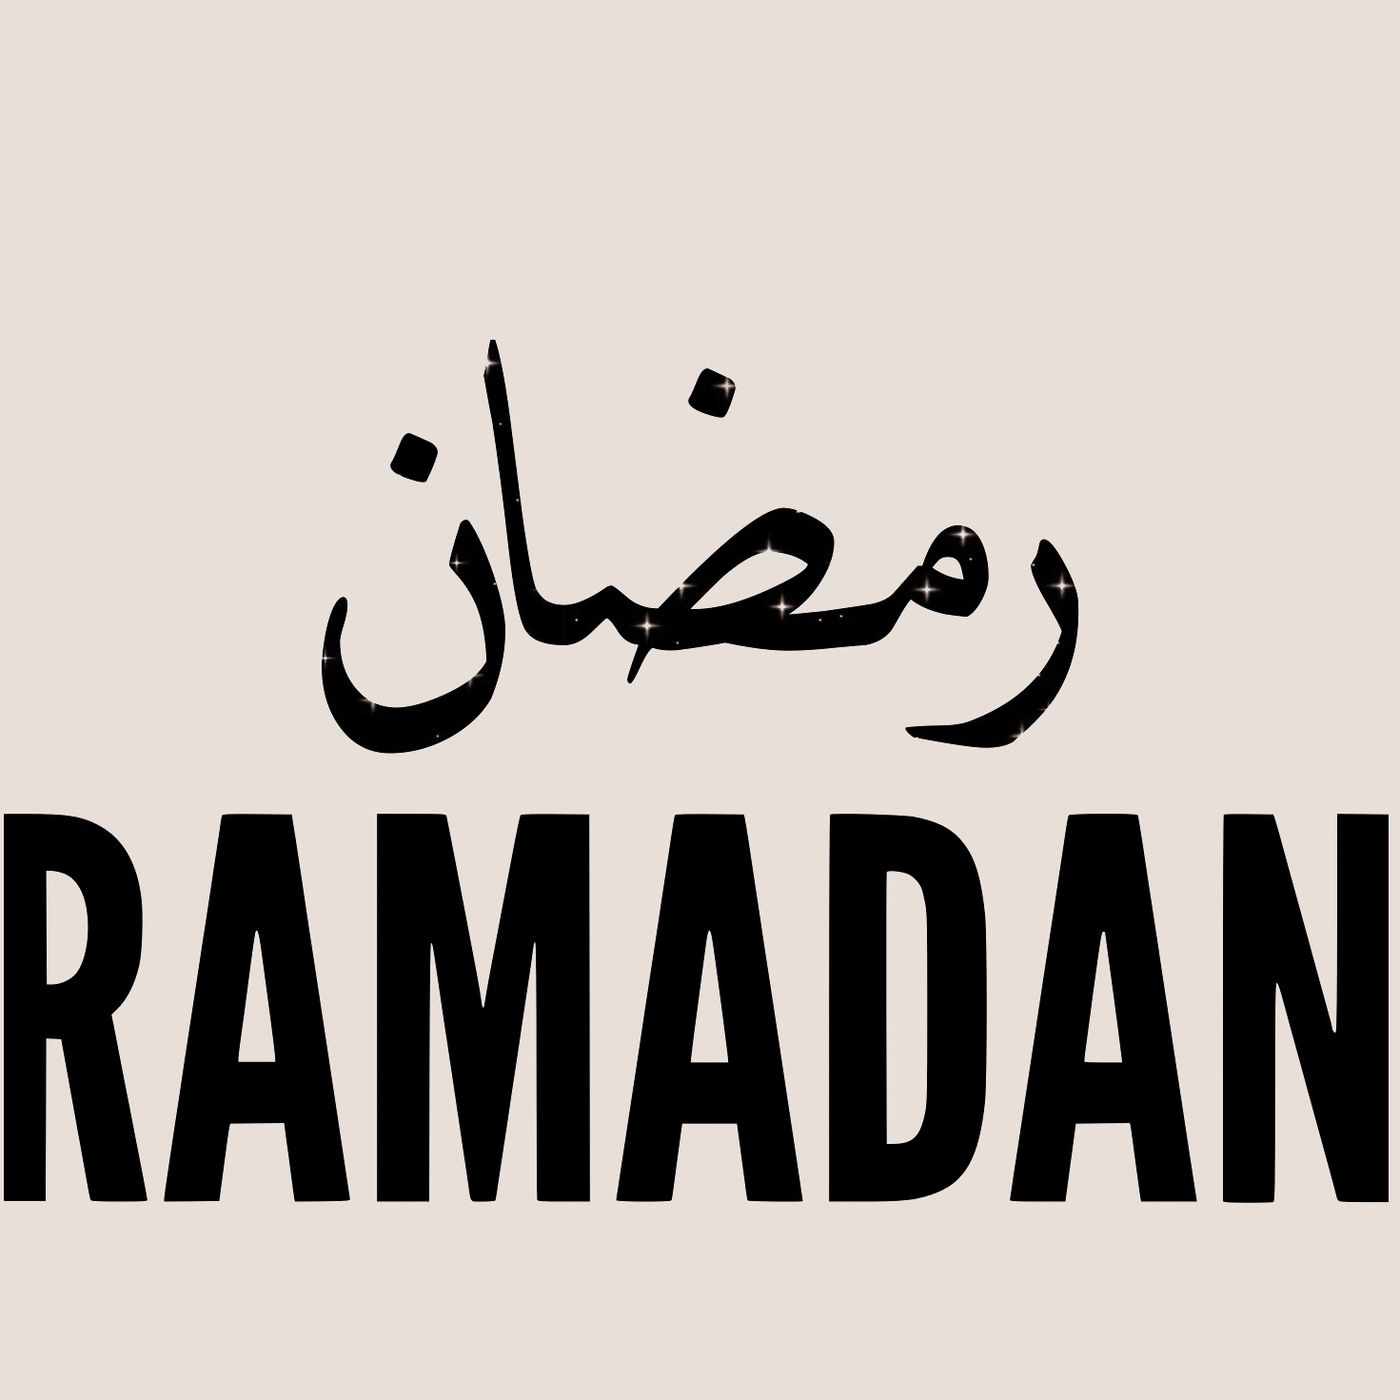 Ramadhaan Q&A 2019 (1440 AH) Part 2/2